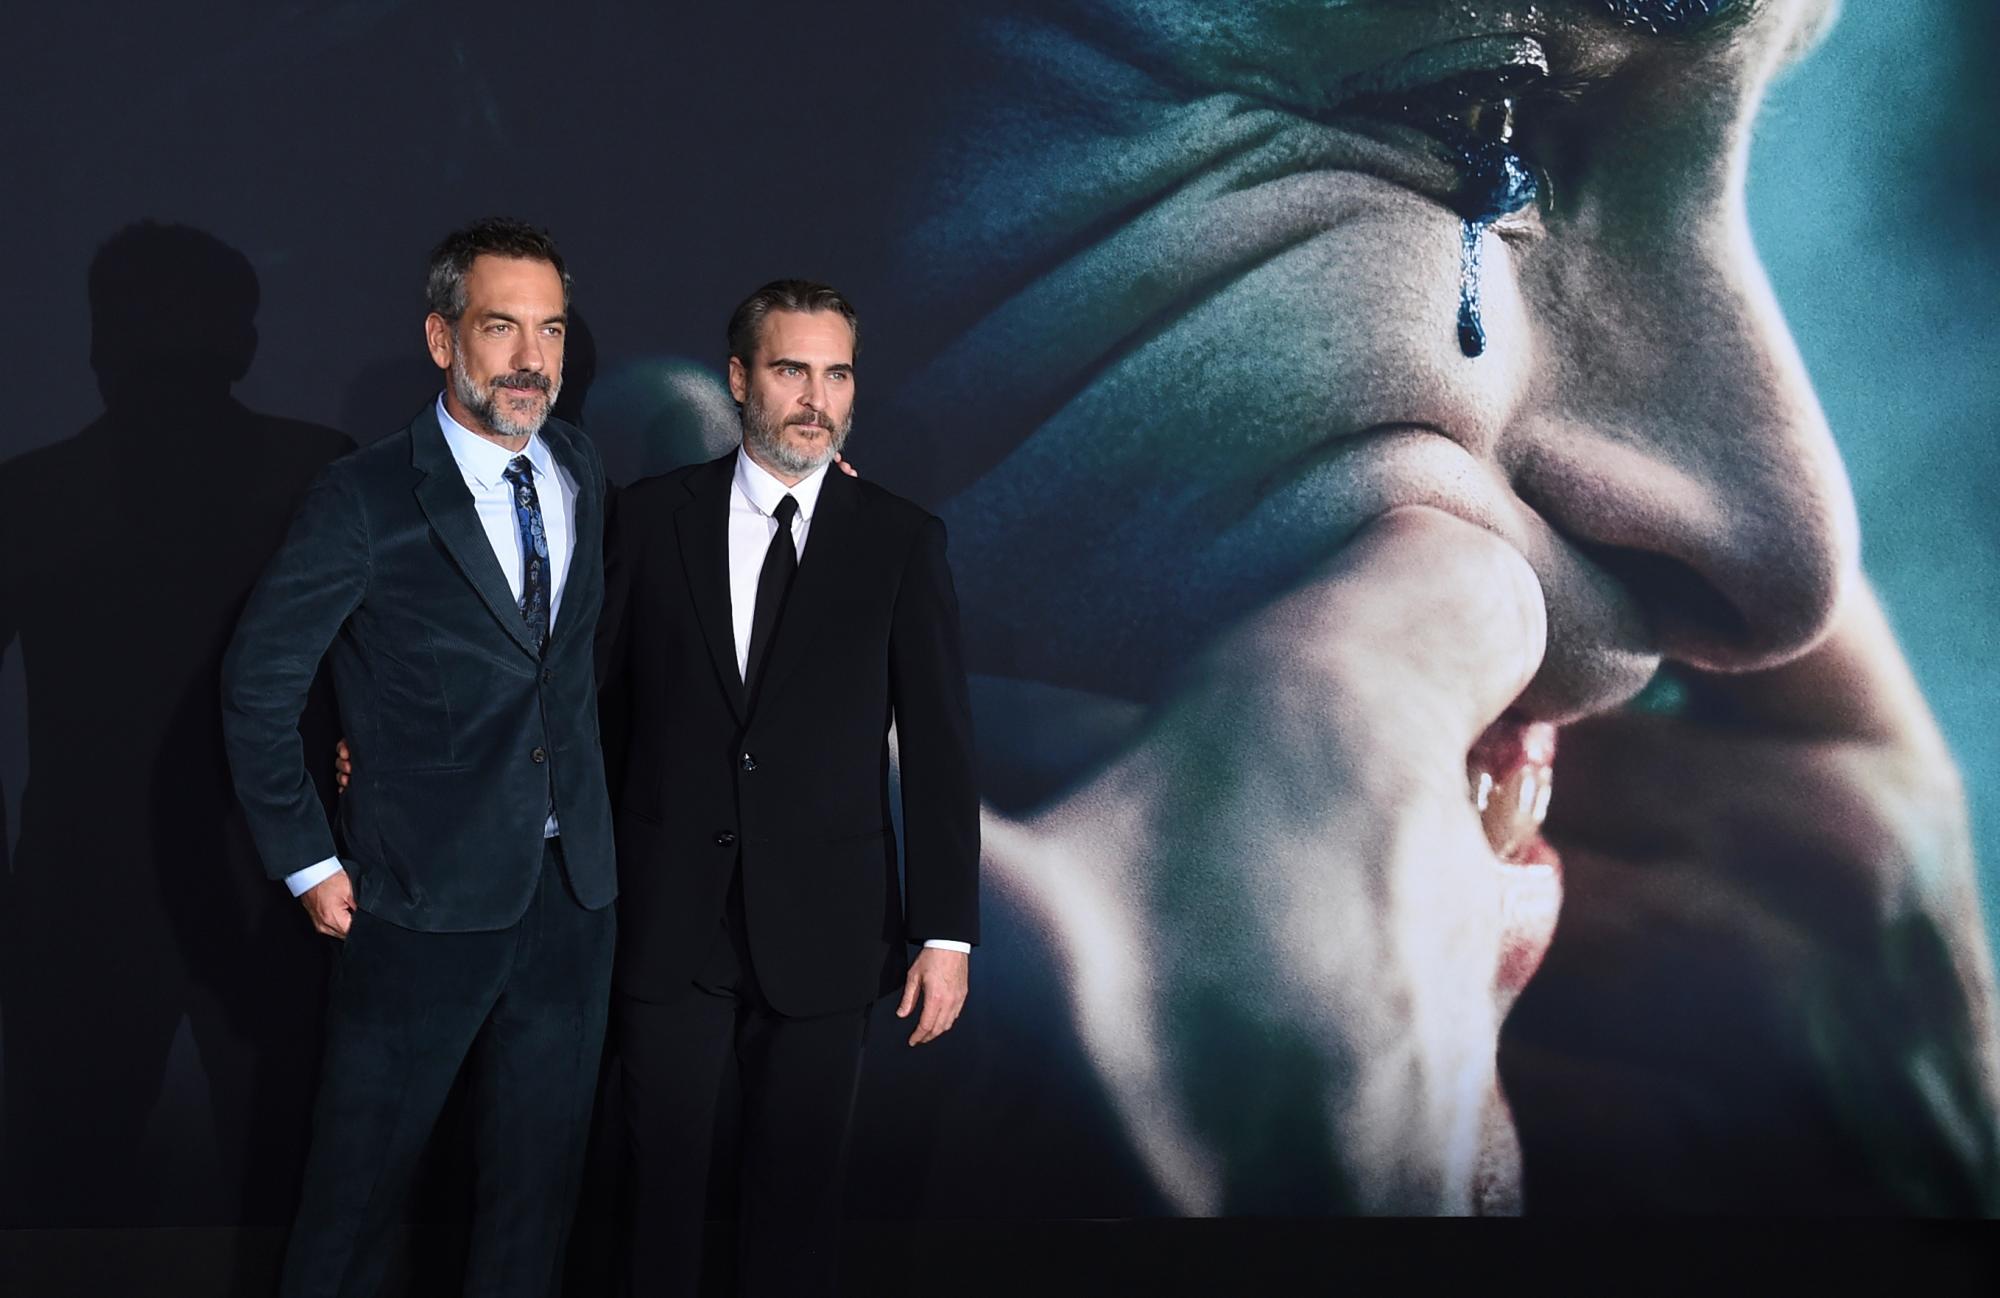 El director Todd Phillips, a la izquierda, y el miembro del reparto Joaquin Phoenix llegan al estreno de “Joker” en Los Ángeles en el Teatro Chino TCL el sábado 28 de septiembre de 2019. 